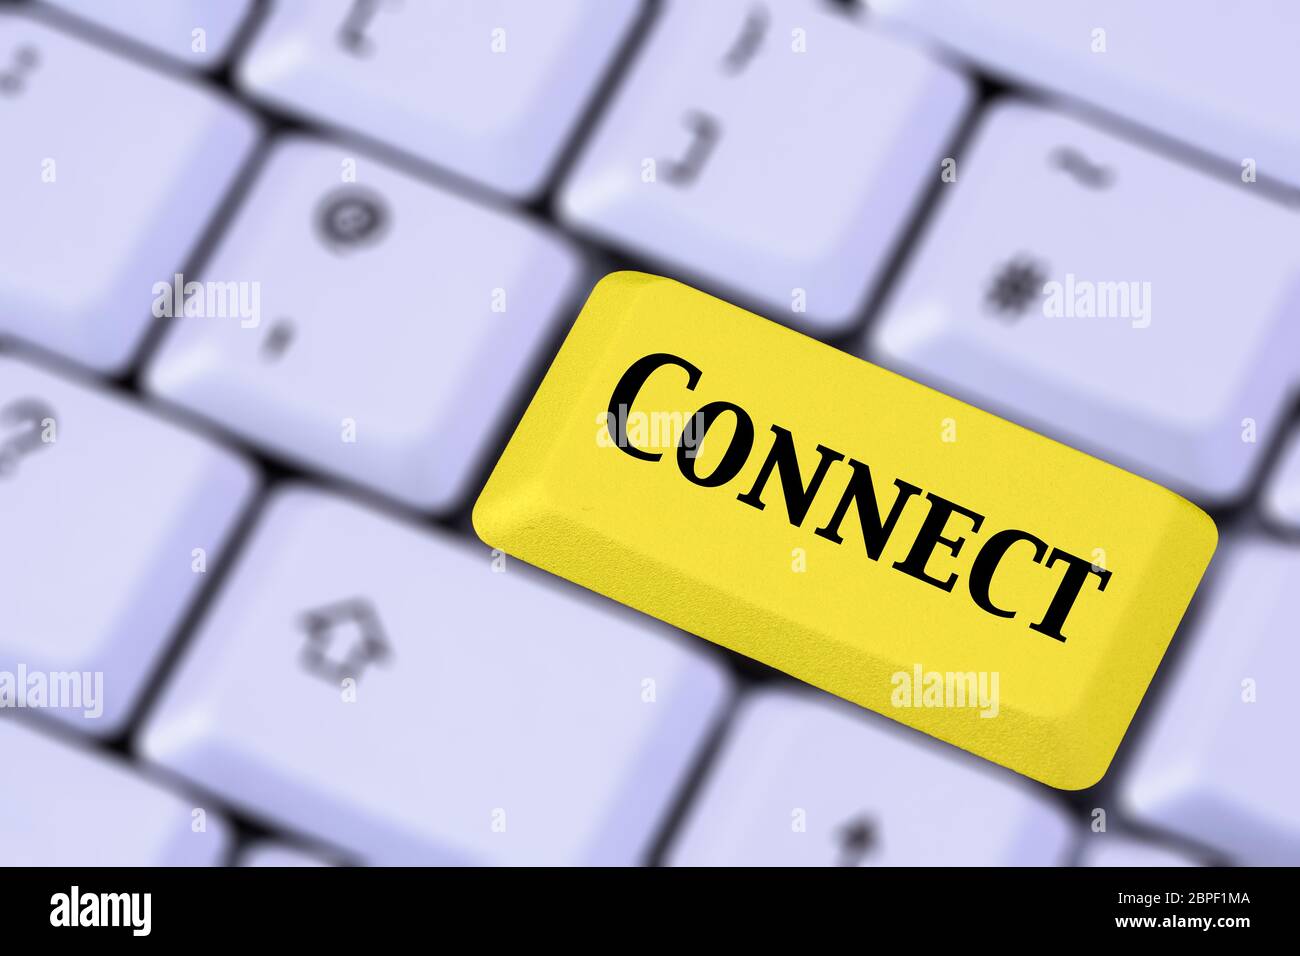 Eine Tastatur mit dem Wort CONNECT auf einer gelben ENTER-Taste. Verbindungen herstellen und in Verbindung bleiben Konzept. Stockfoto